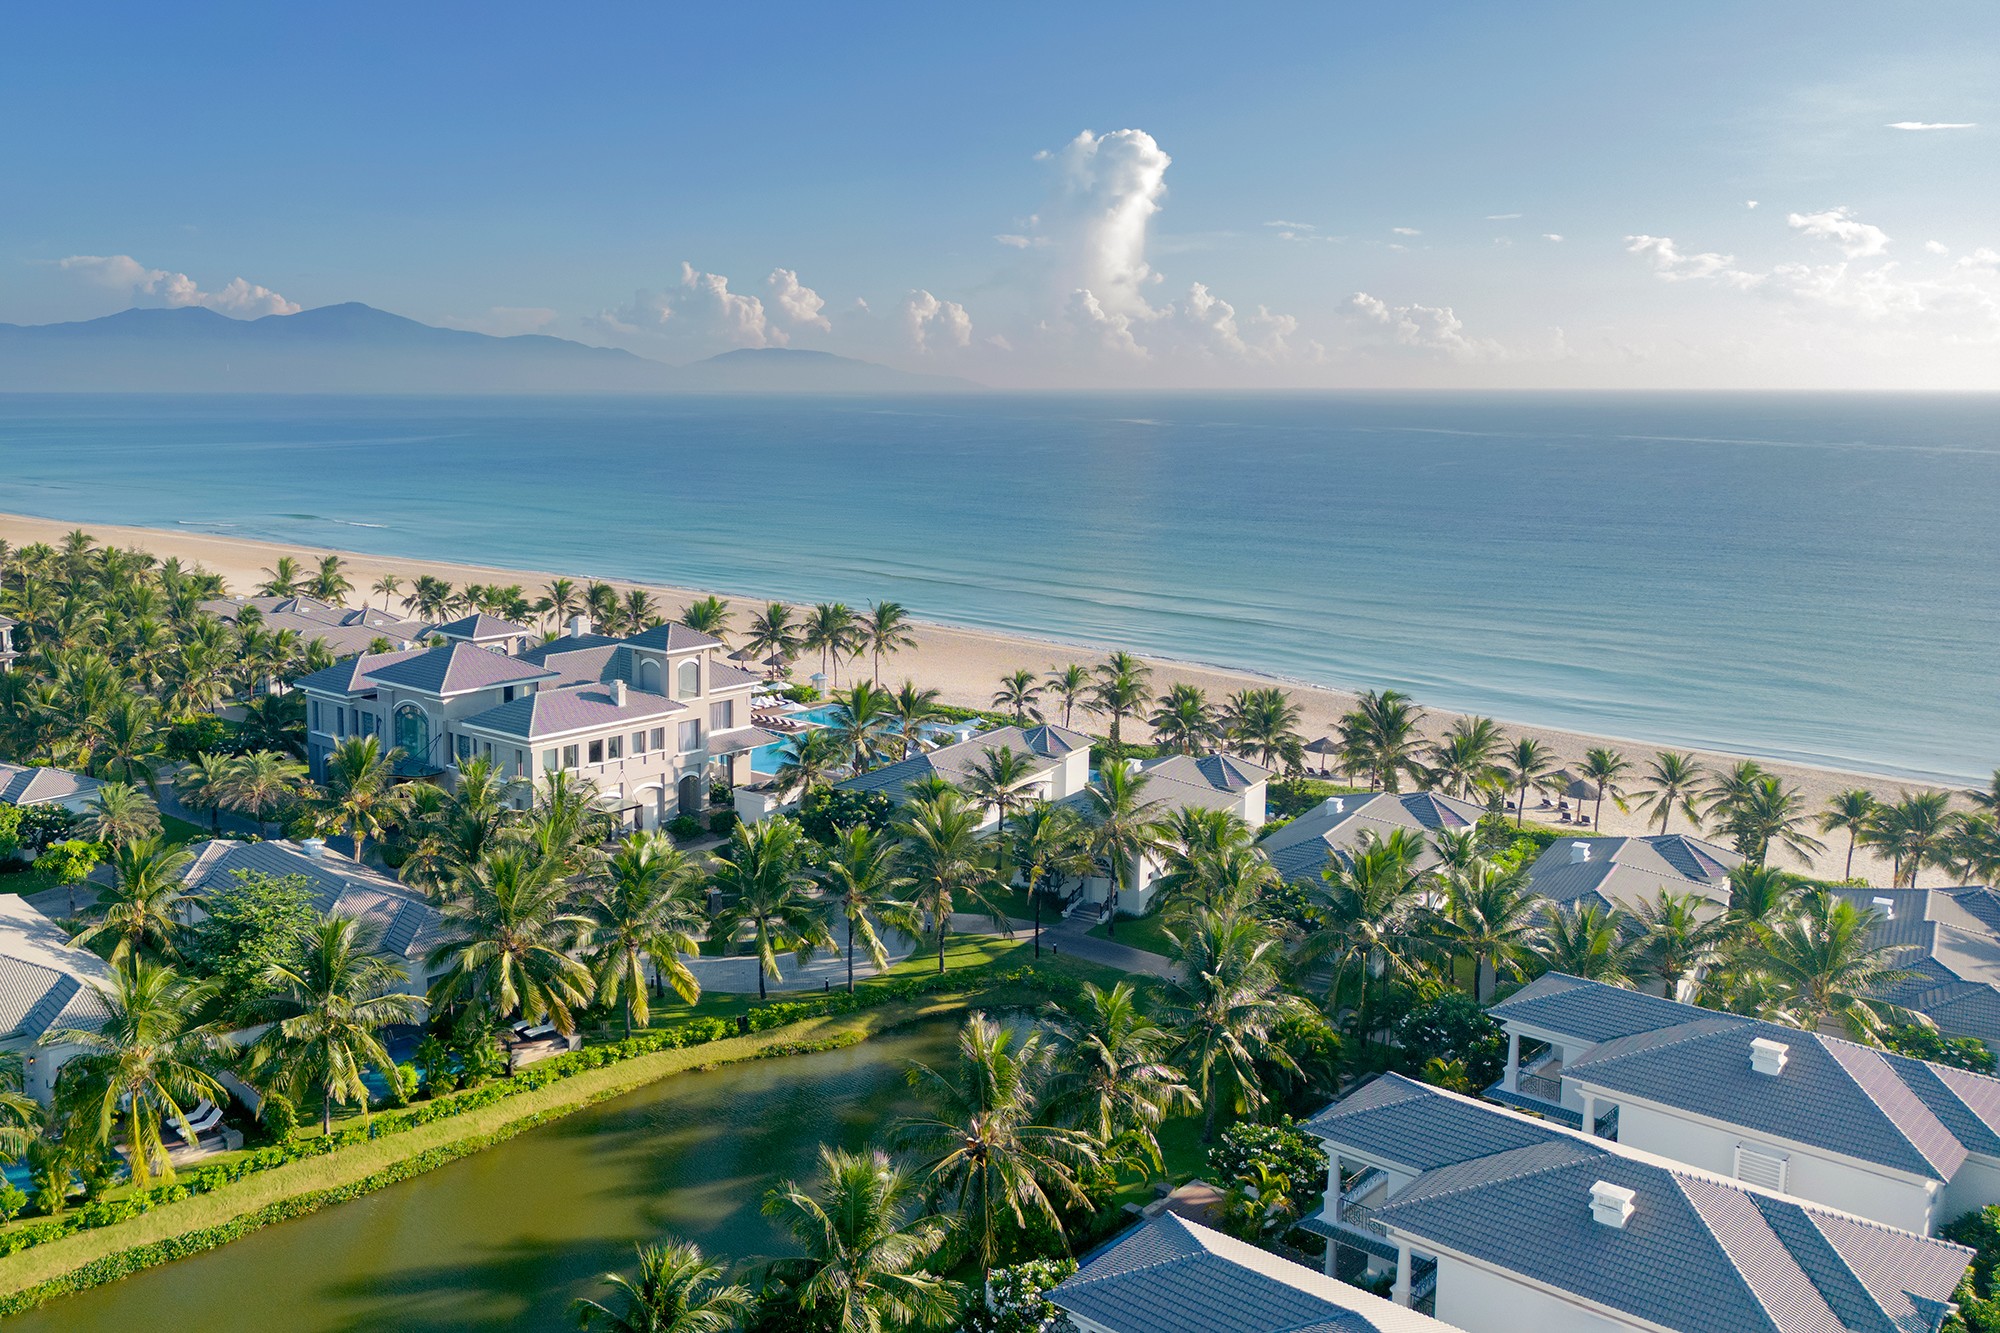 Marriott Bonvoy gia tăng đầu tư, khai trương bộ 3 khu nghỉ dưỡng biển ở Nha Trang, Đà Nẵng và Hội An - 2